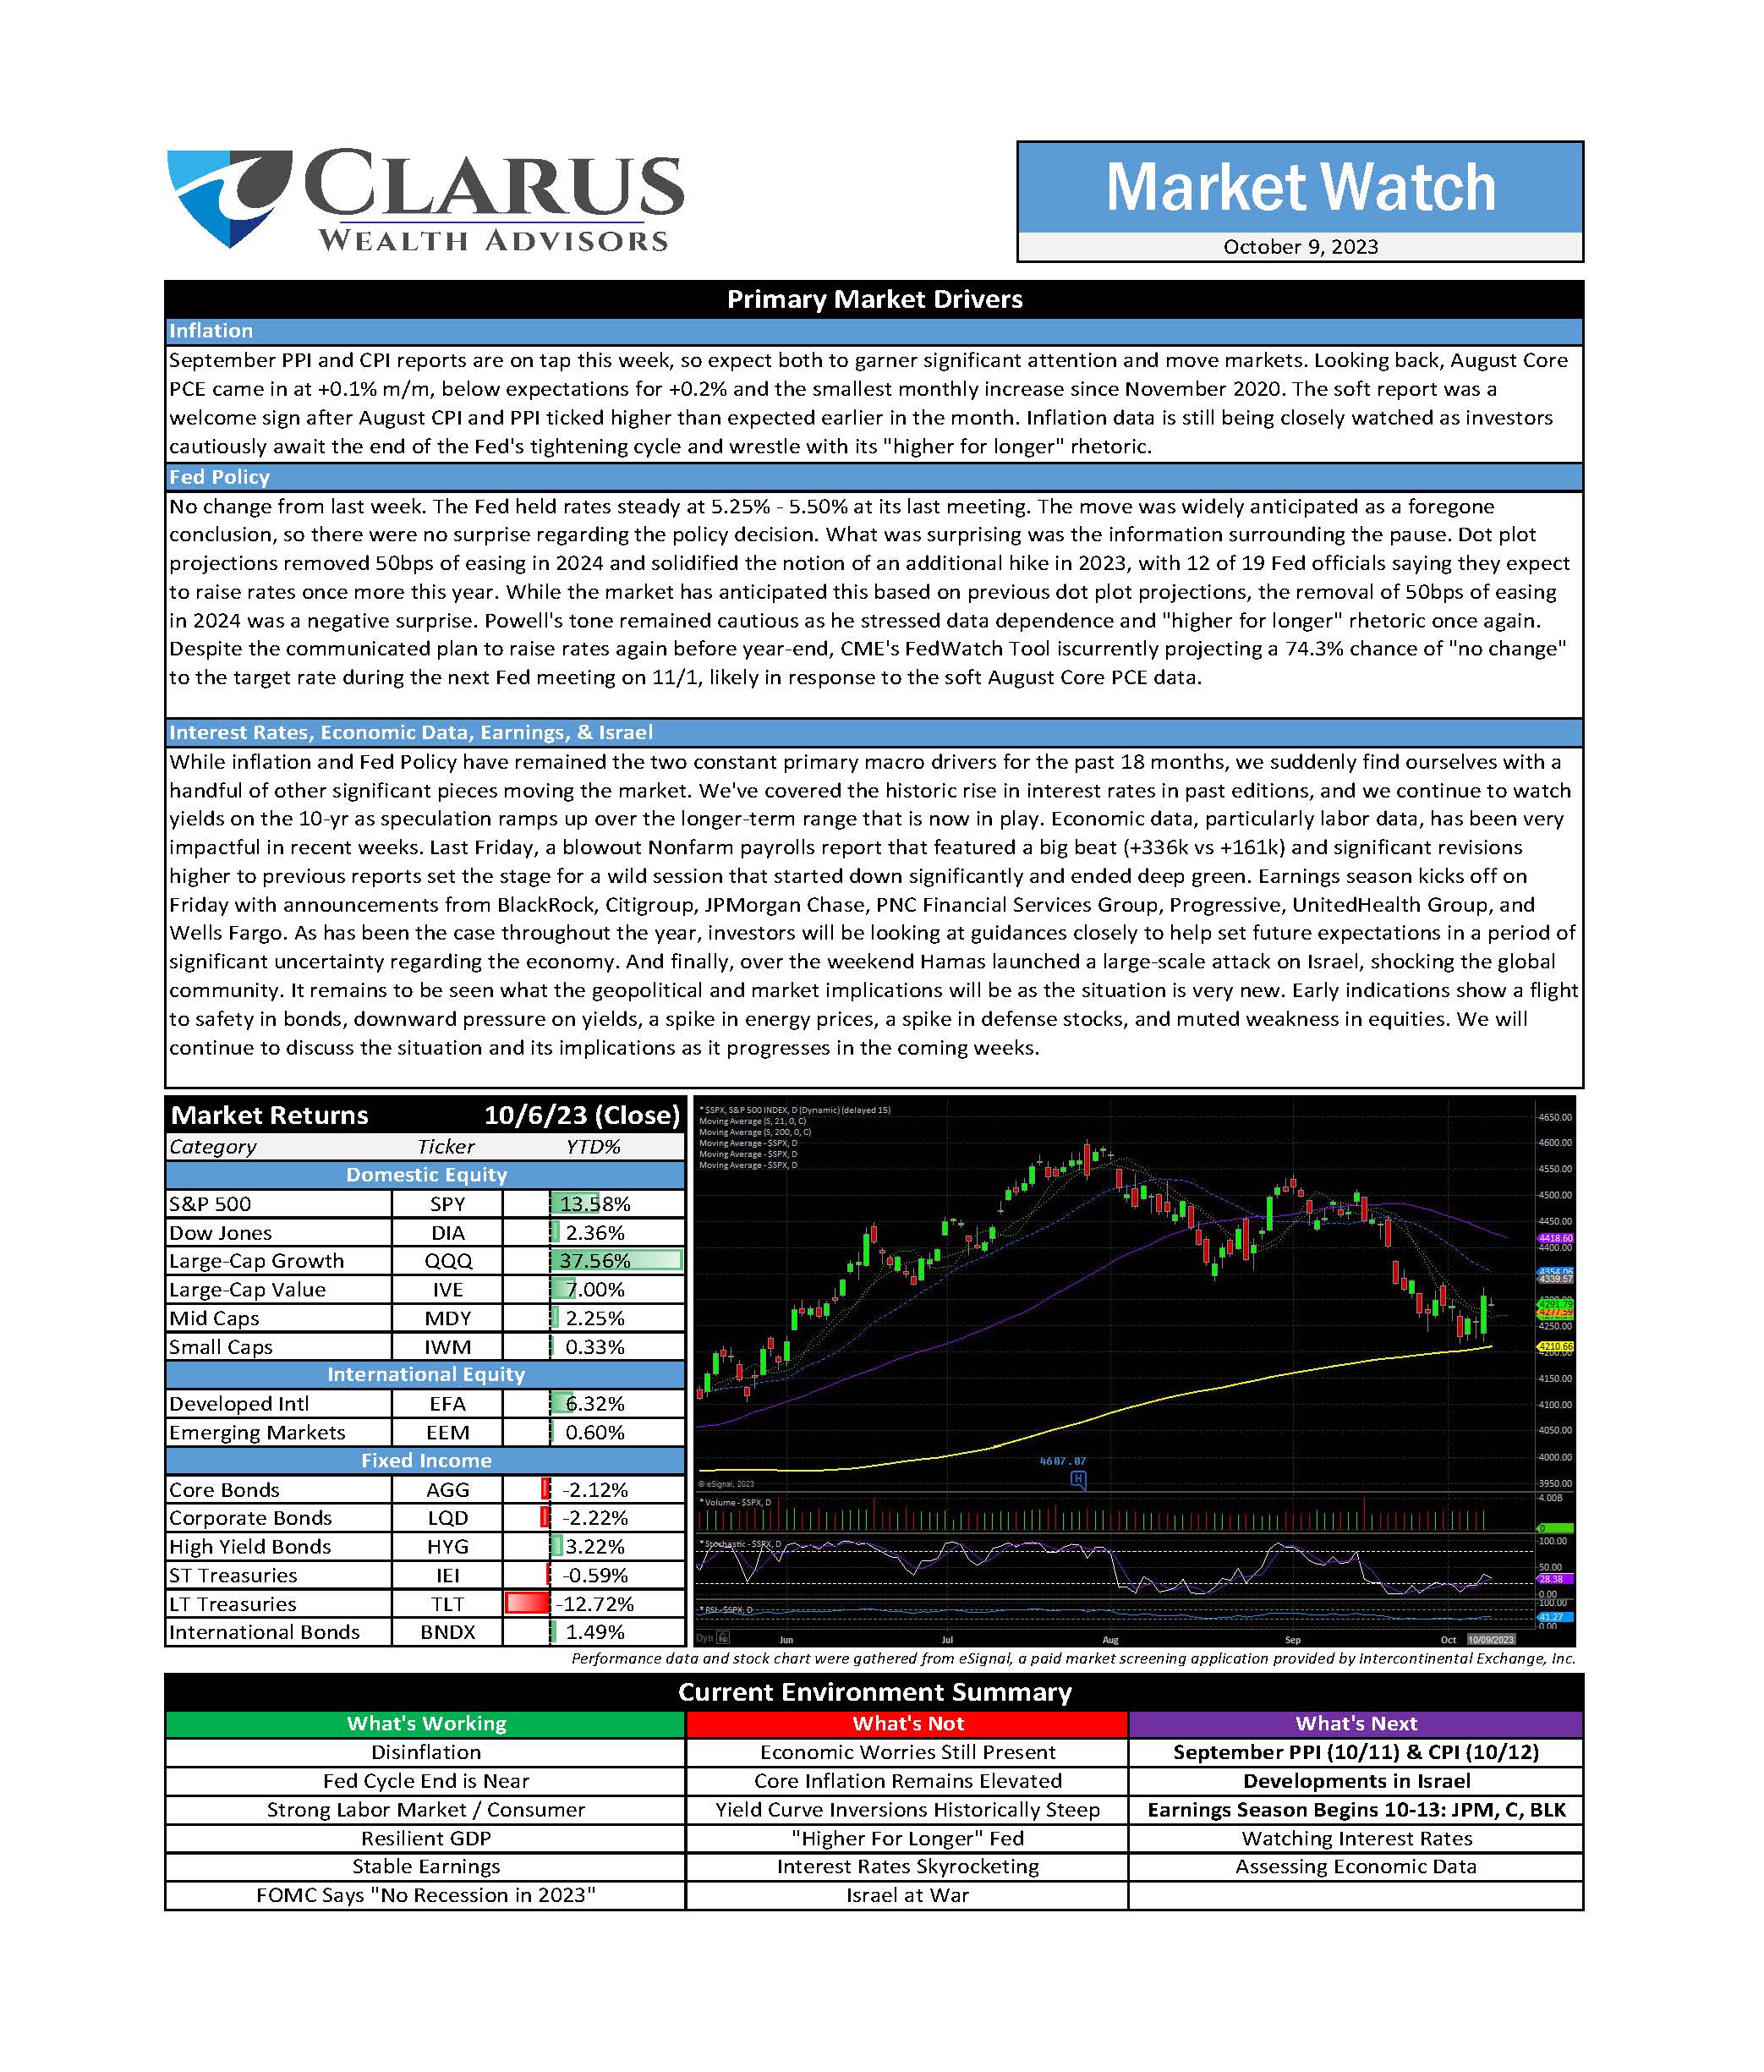 clarus_market_watch_10.09.23_Page_1.jpg